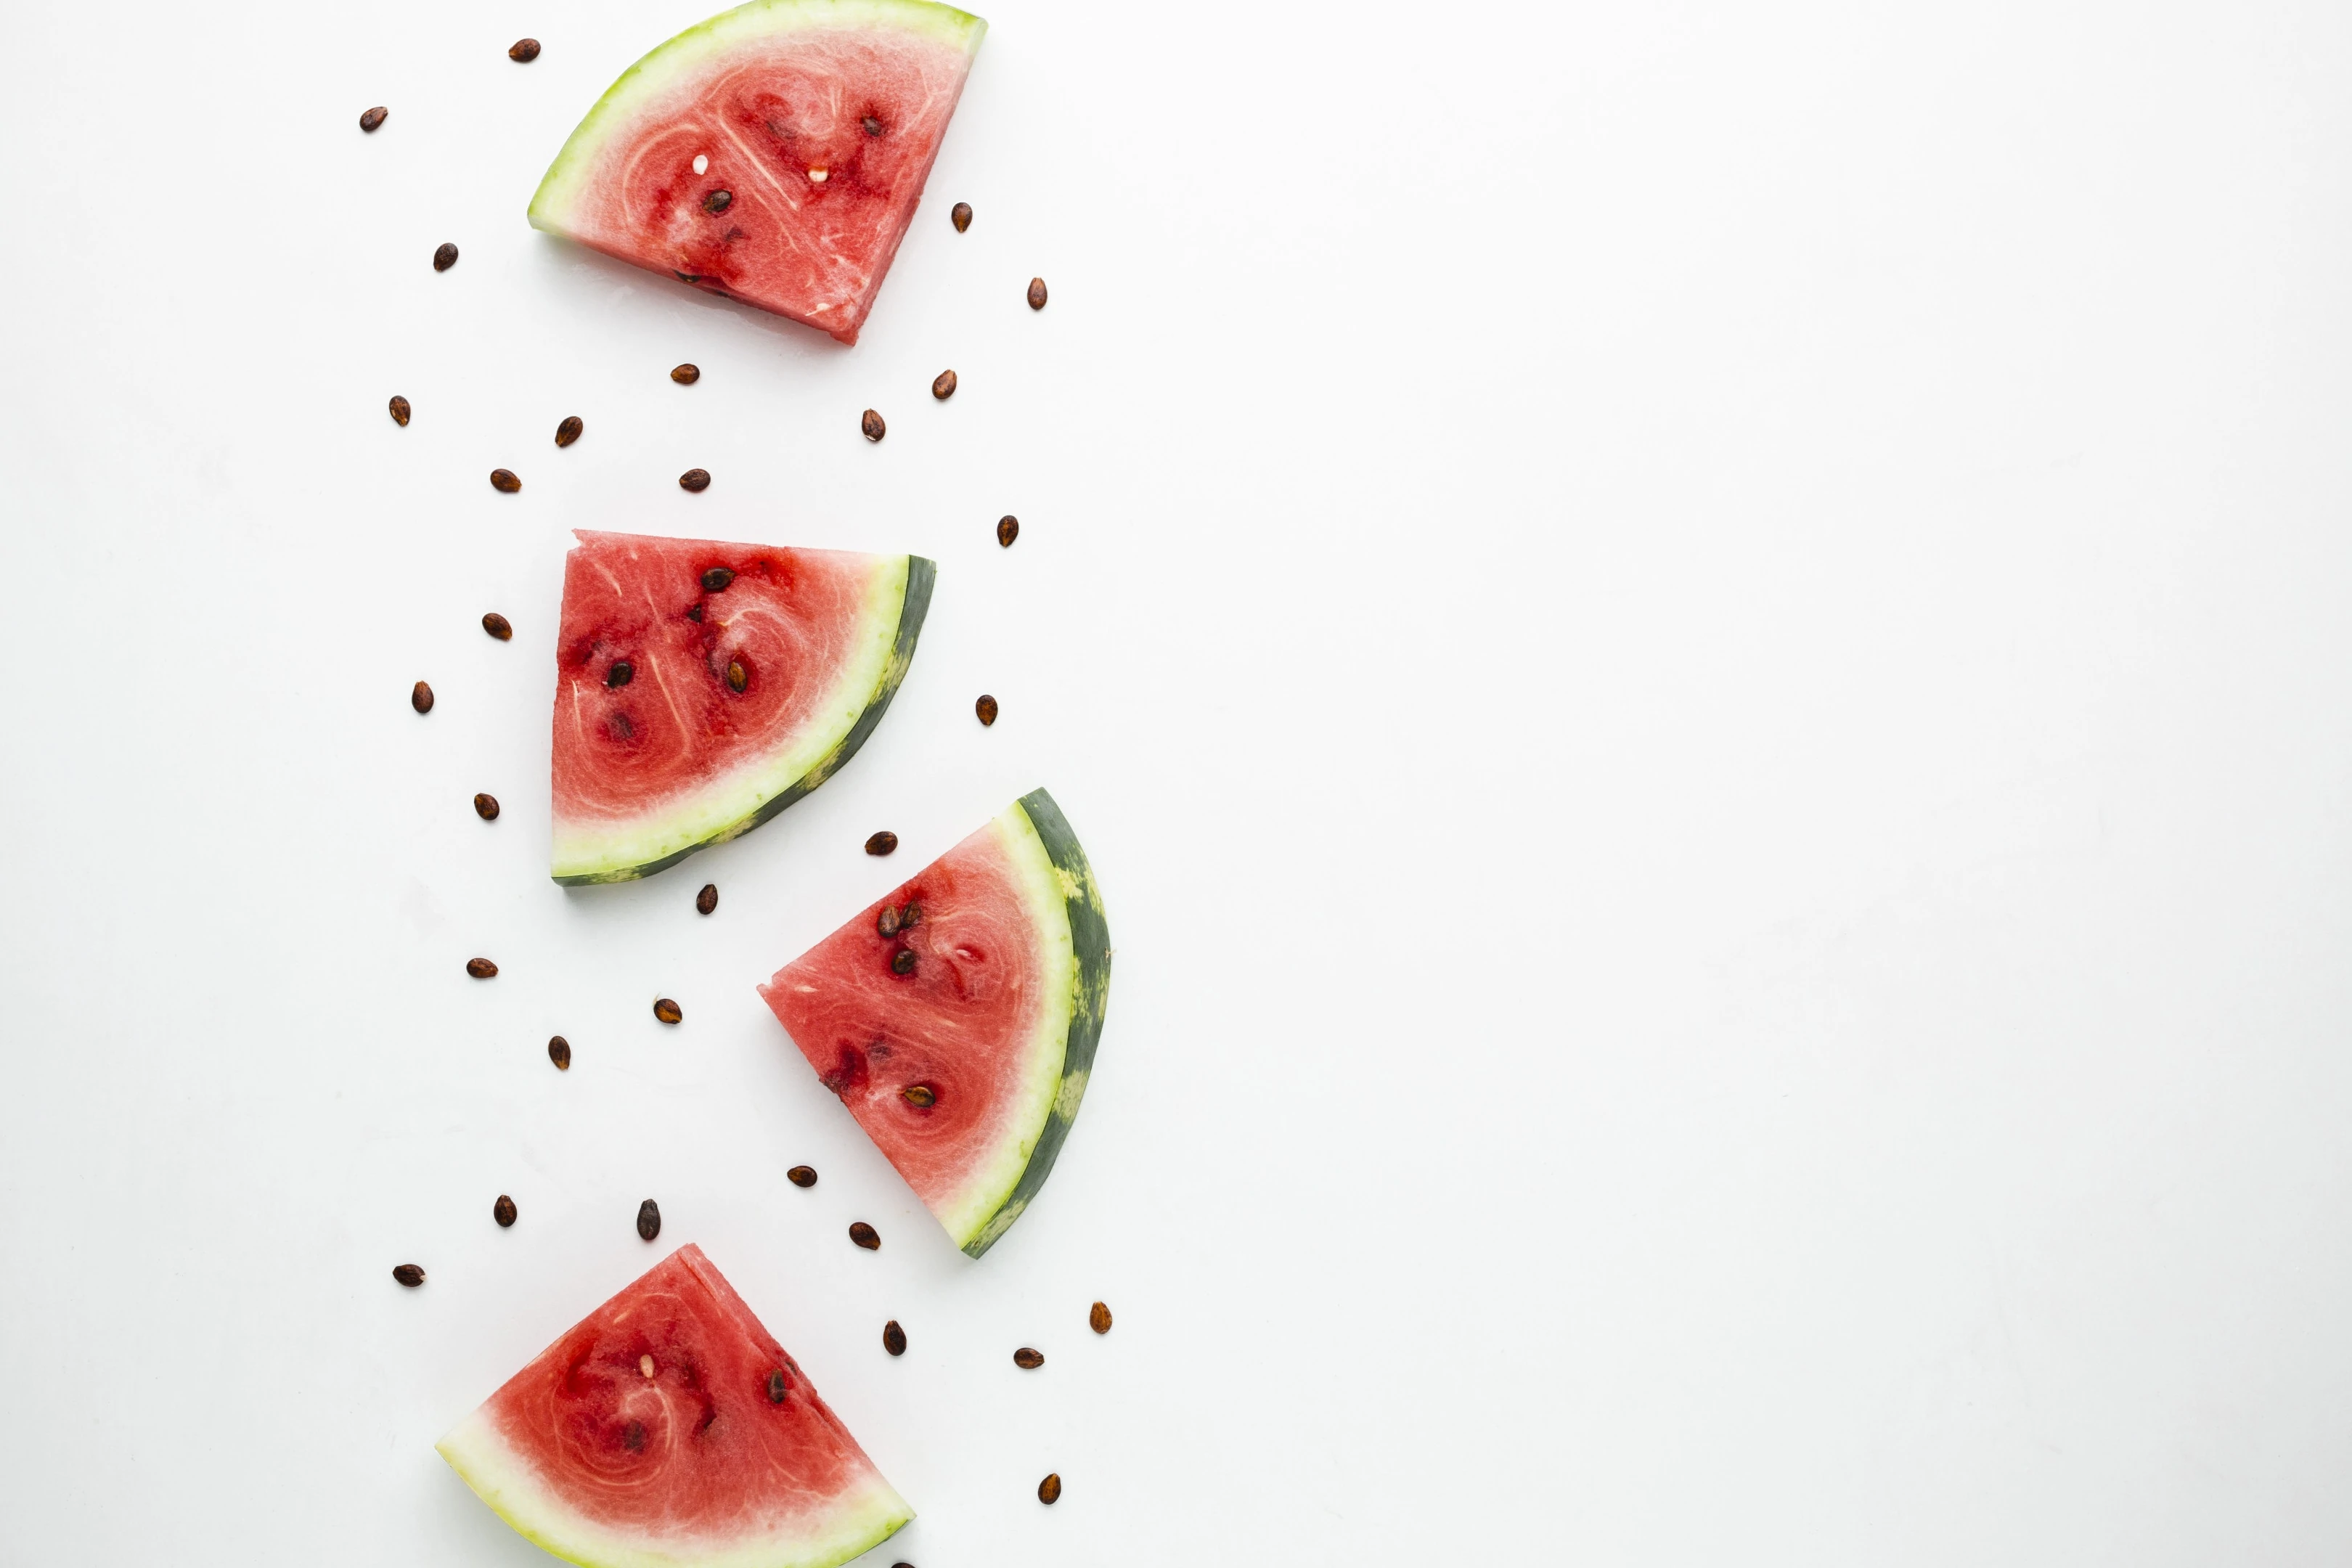 Sliced watermelon arrangement on white background